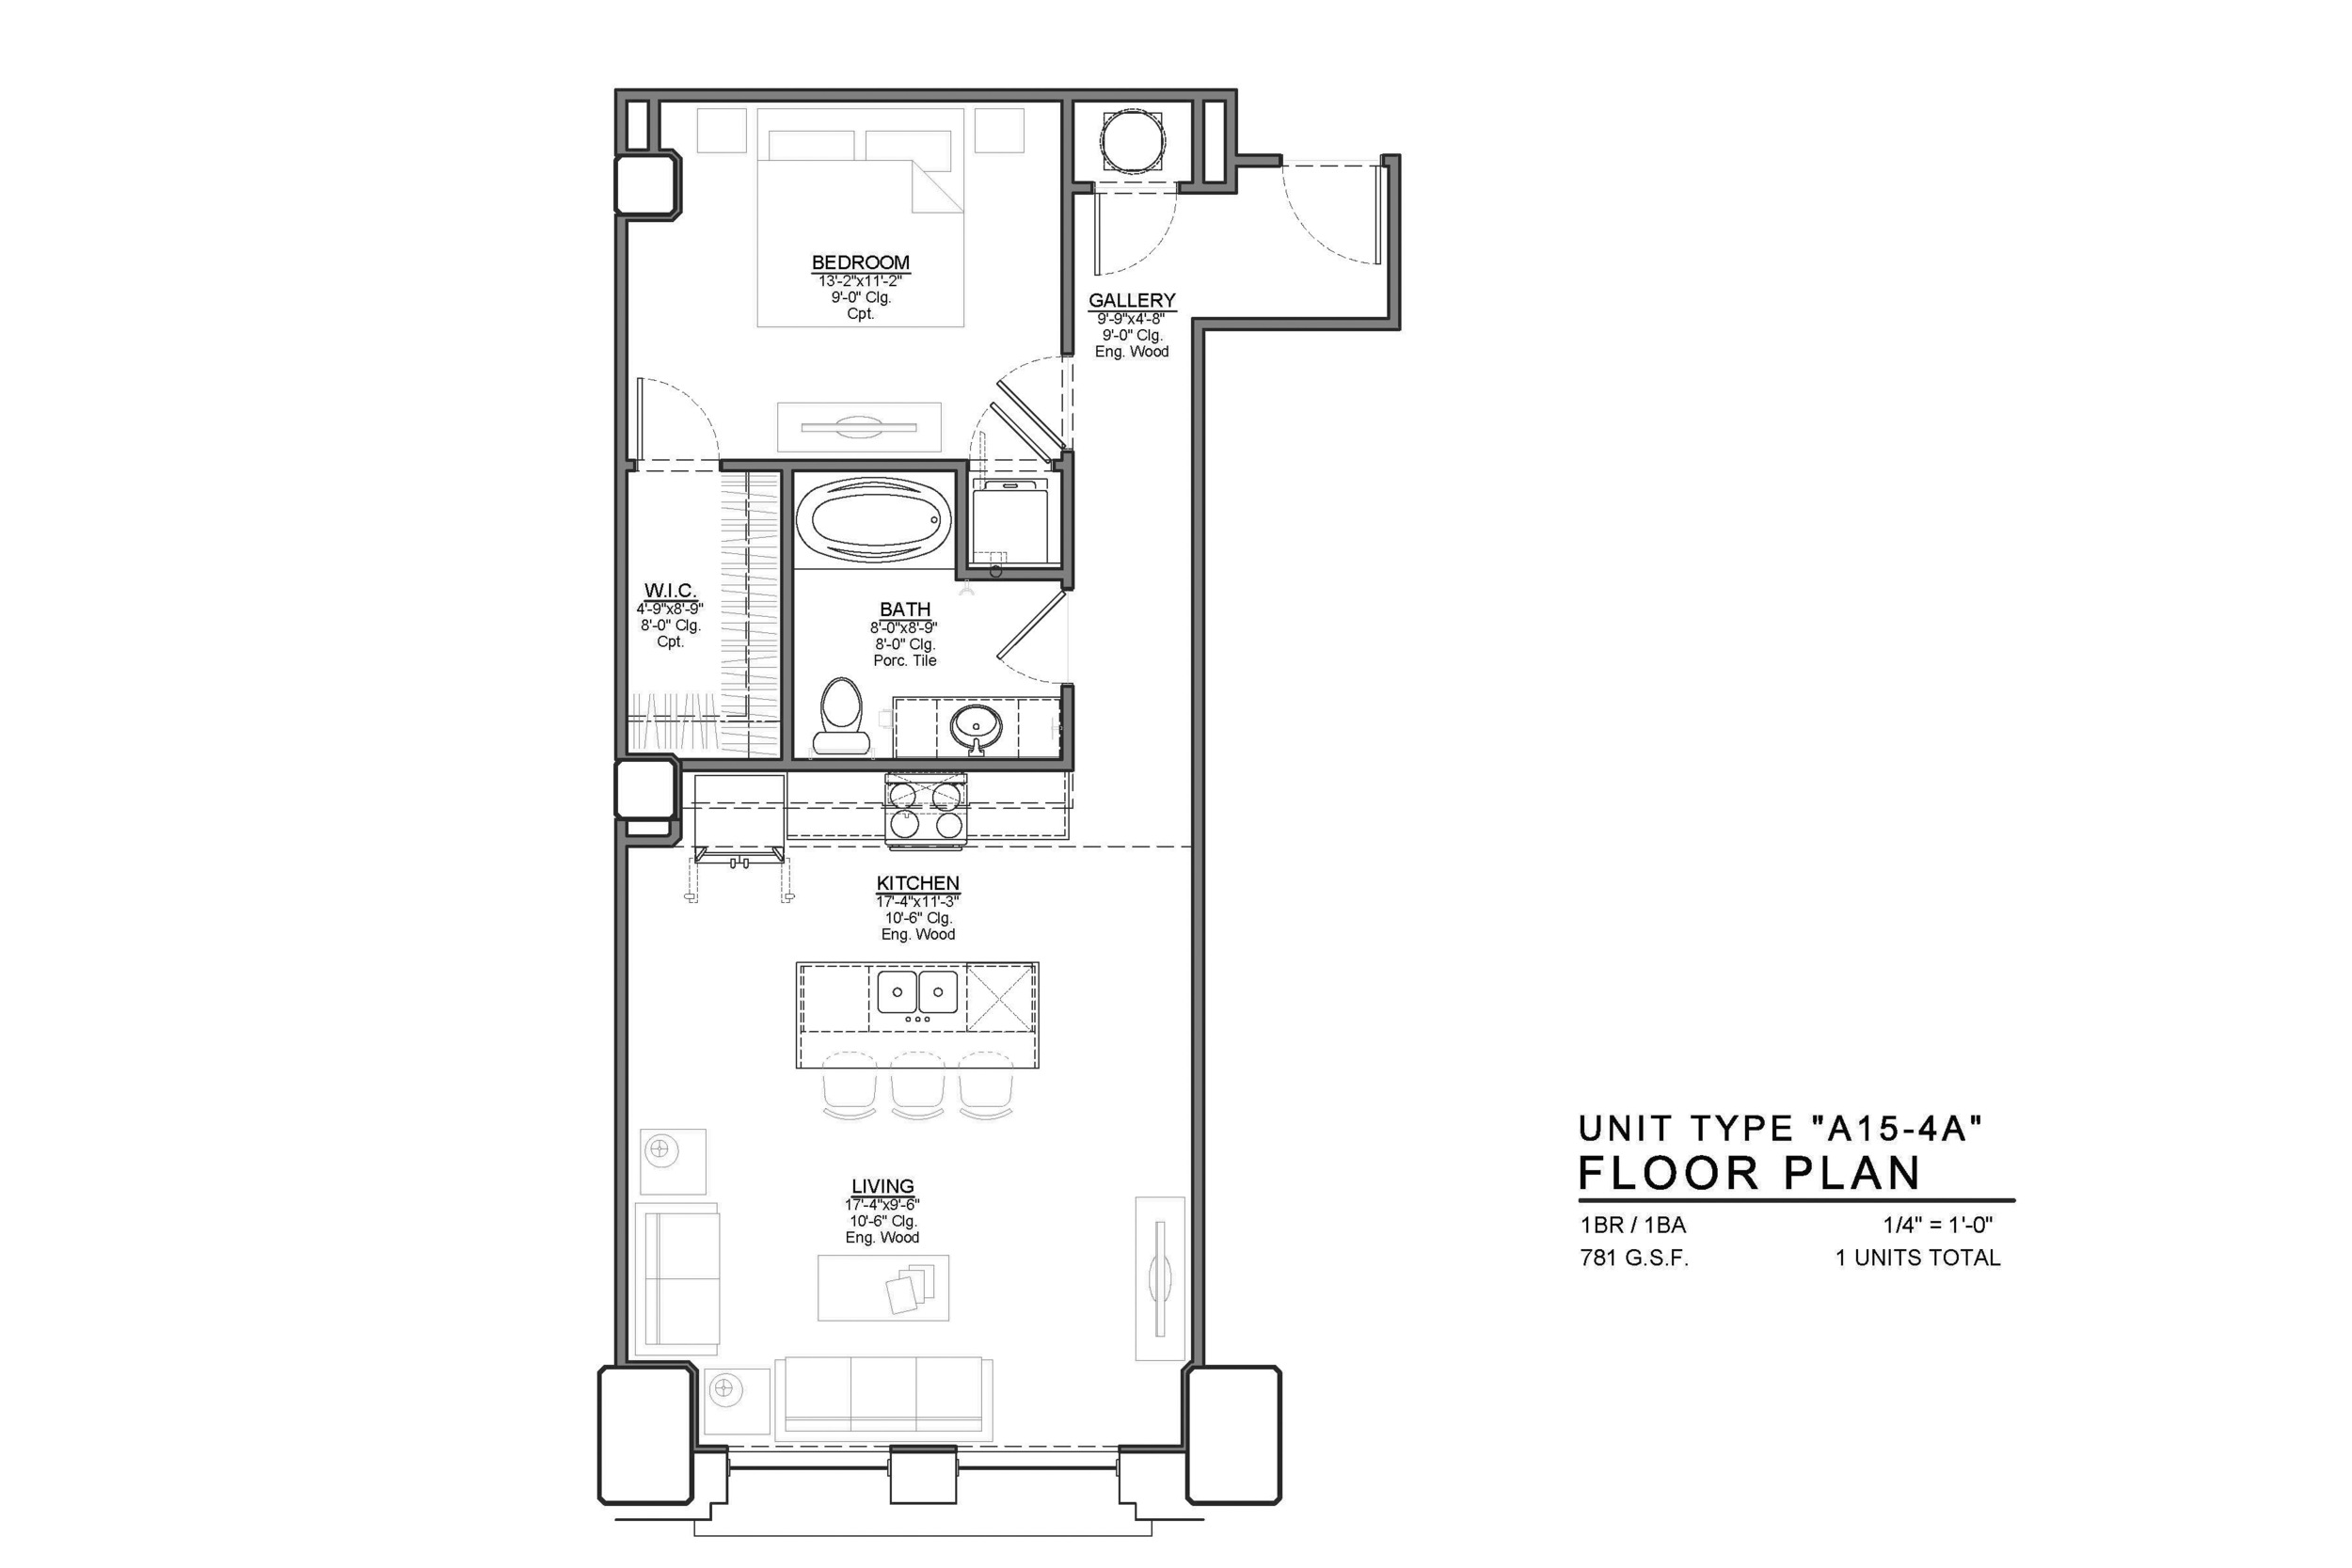 A15-4A FLOOR PLAN: 1 BEDROOM / 1 BATH